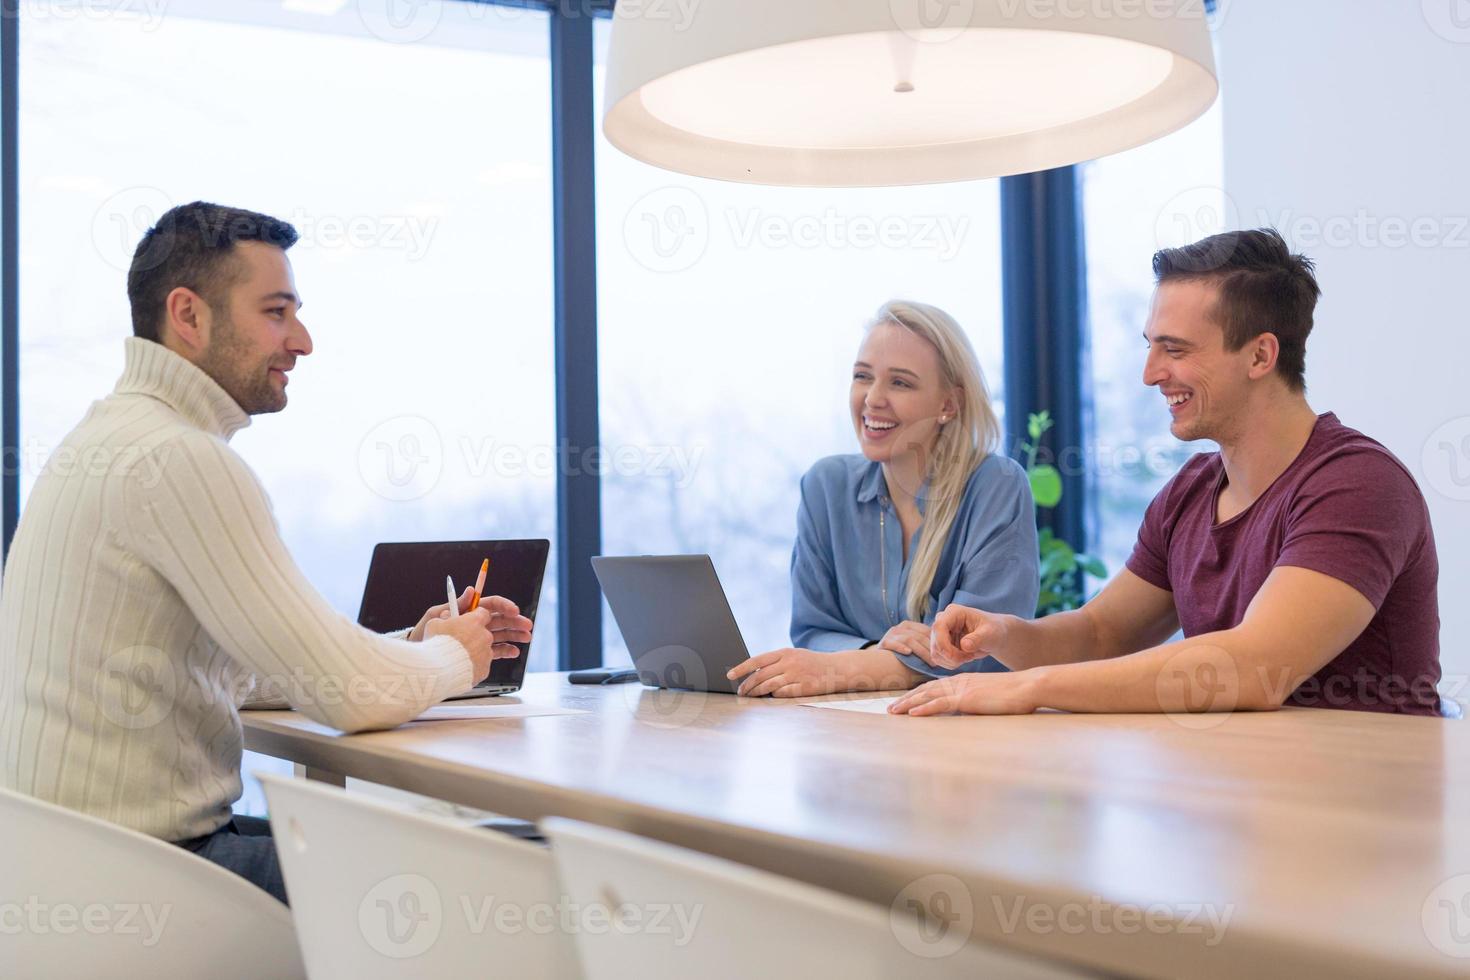 equipo de negocios de inicio en una reunión en un edificio de oficinas moderno foto